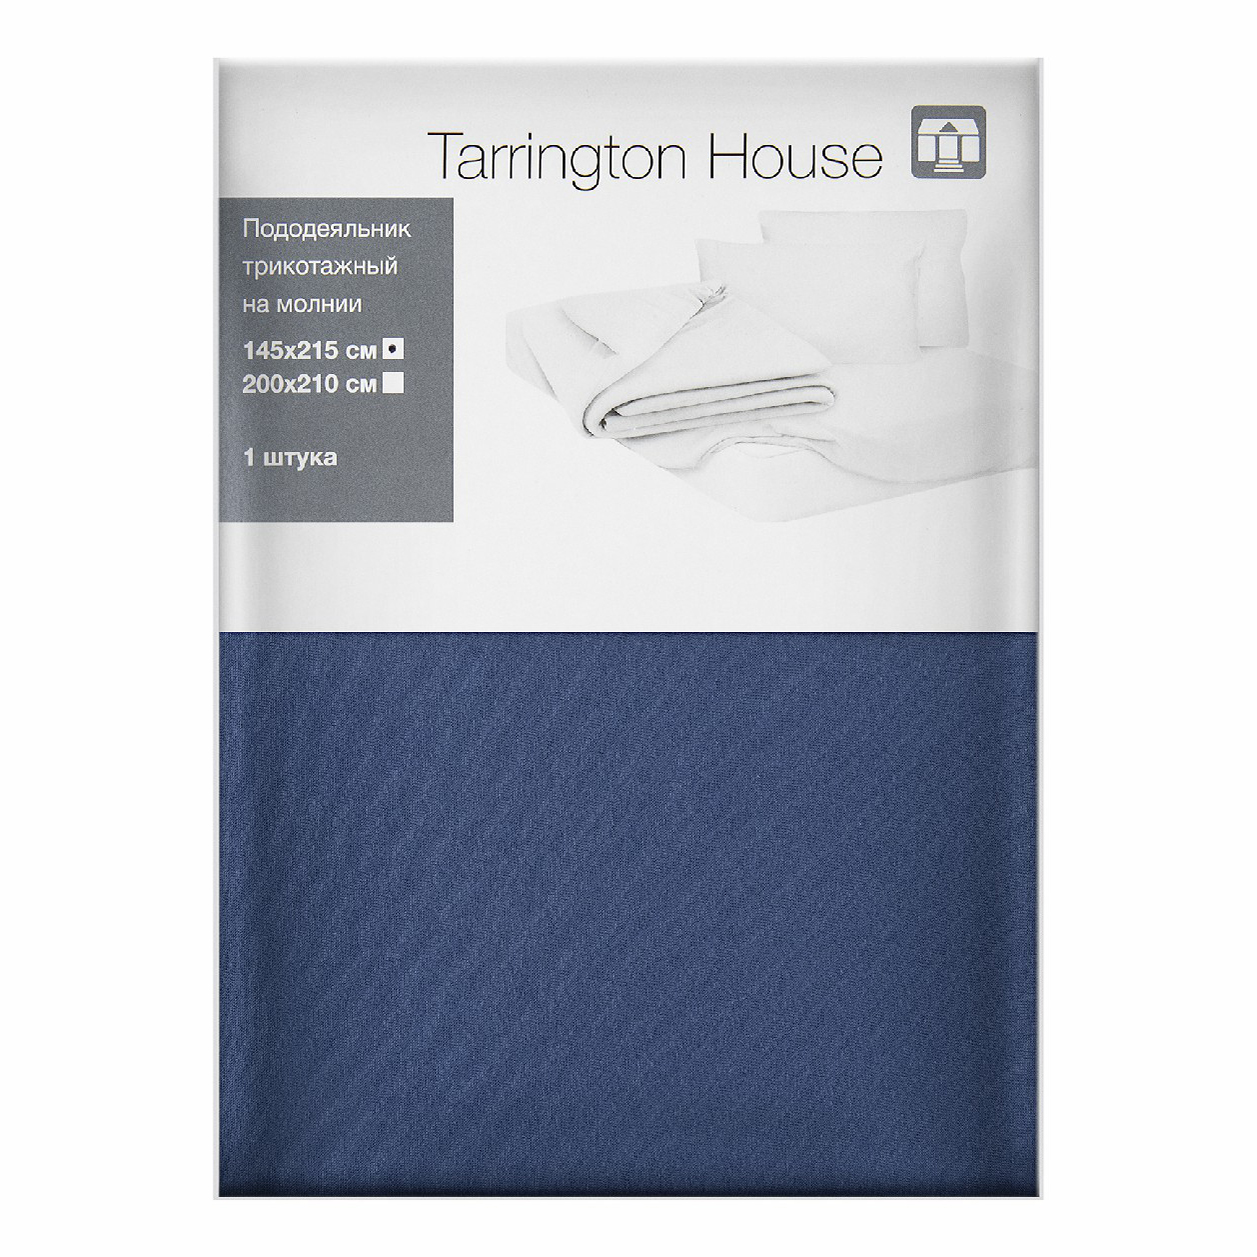 фото Пододеяльник tarrington house 145x215 см трикотаж синий